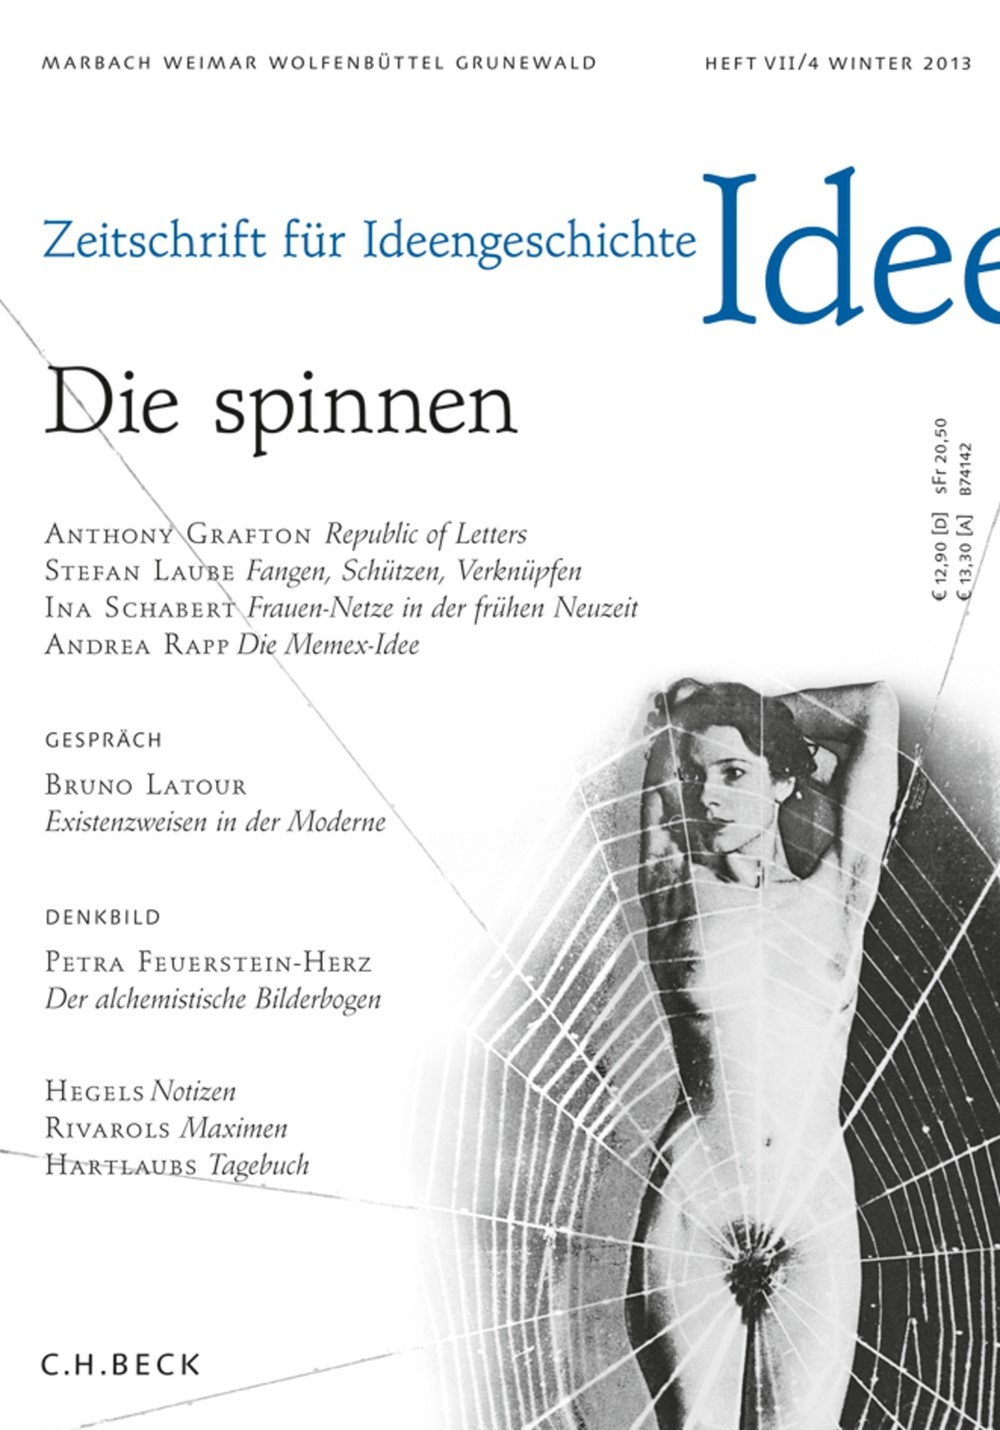 cover of Heft VII/4 Winter 2013